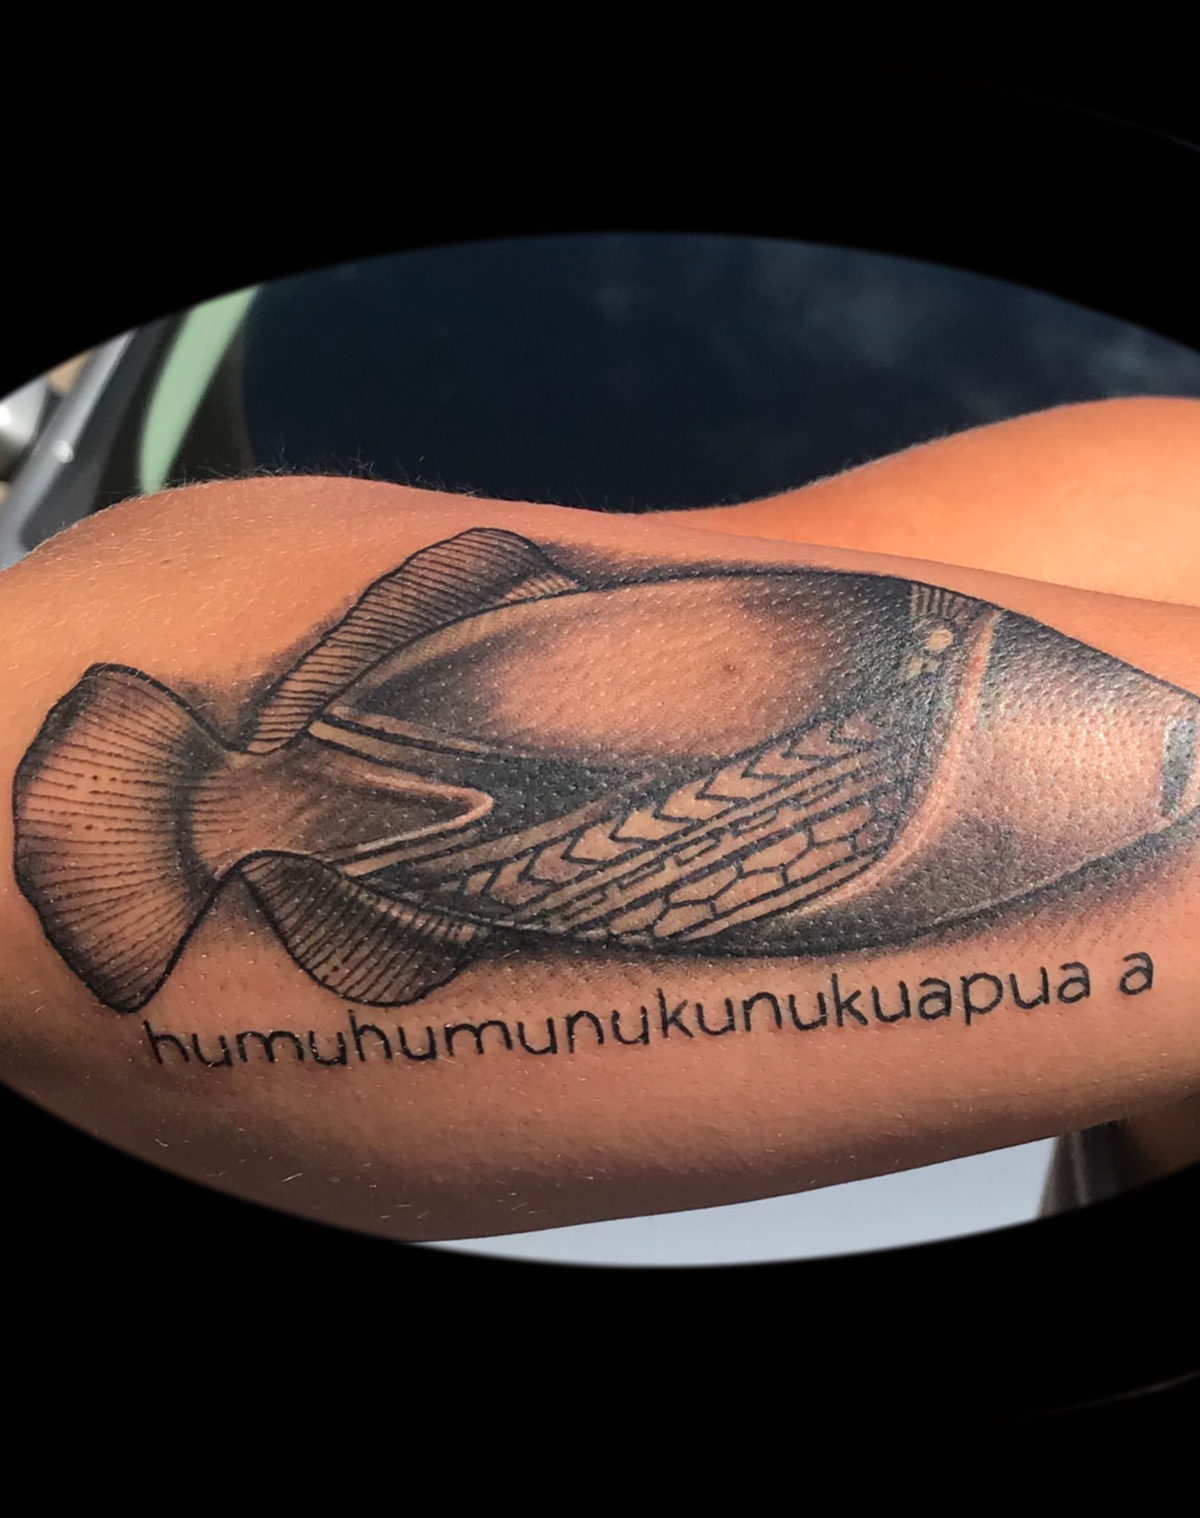 Gruper fish tattoo